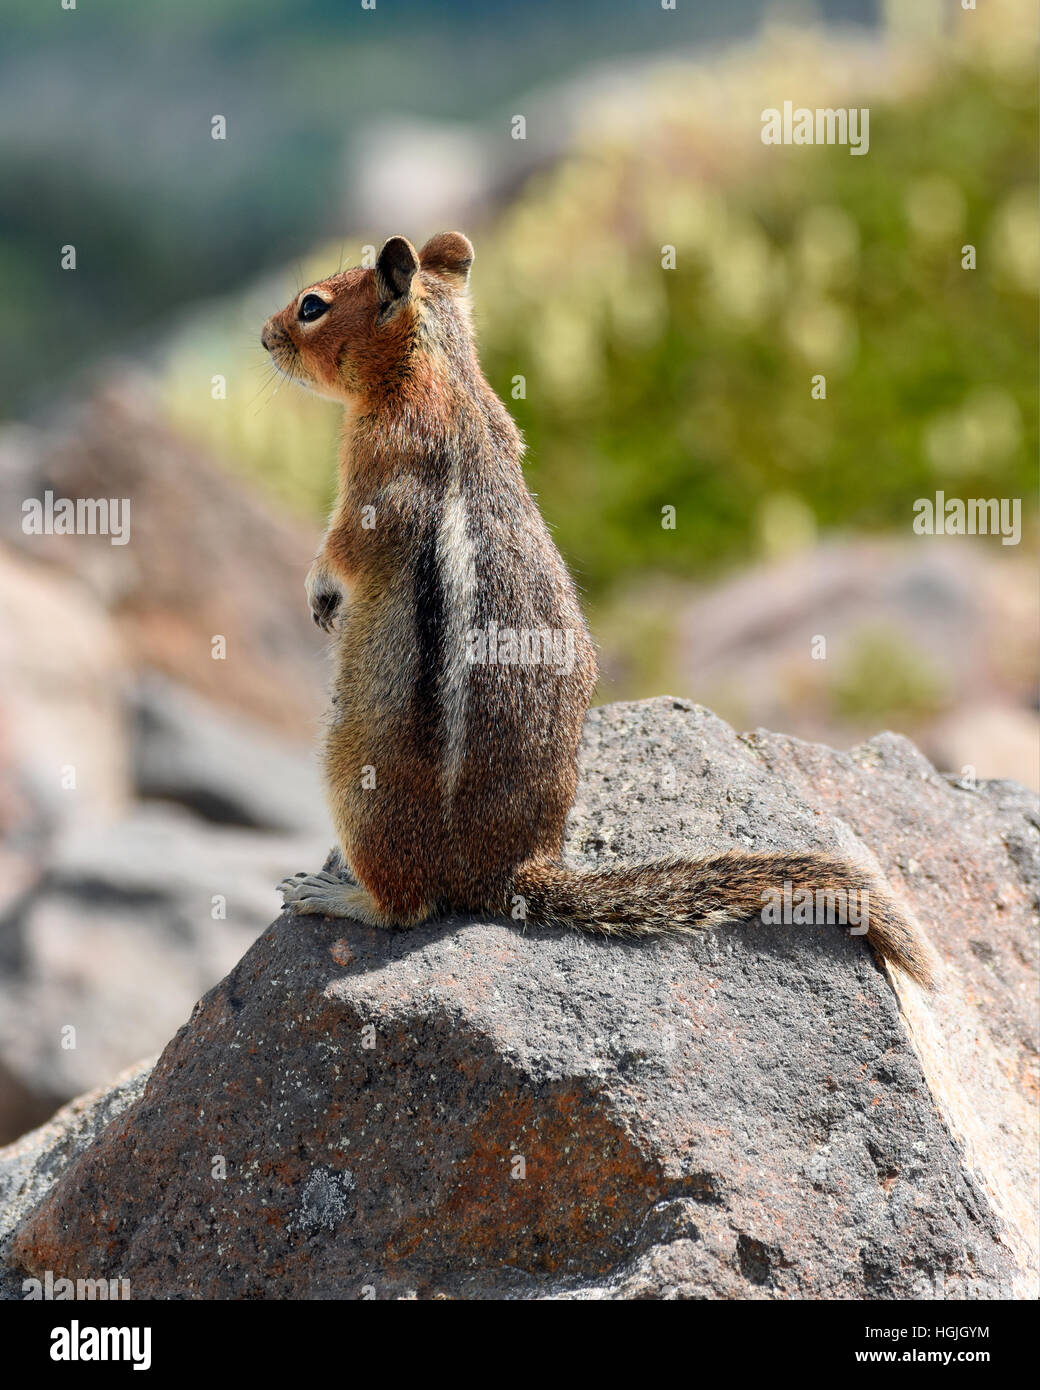 Chipmunk (Tamias) on a rock, alert, Mount Rainier National Park, Washington State, USA Stock Photo